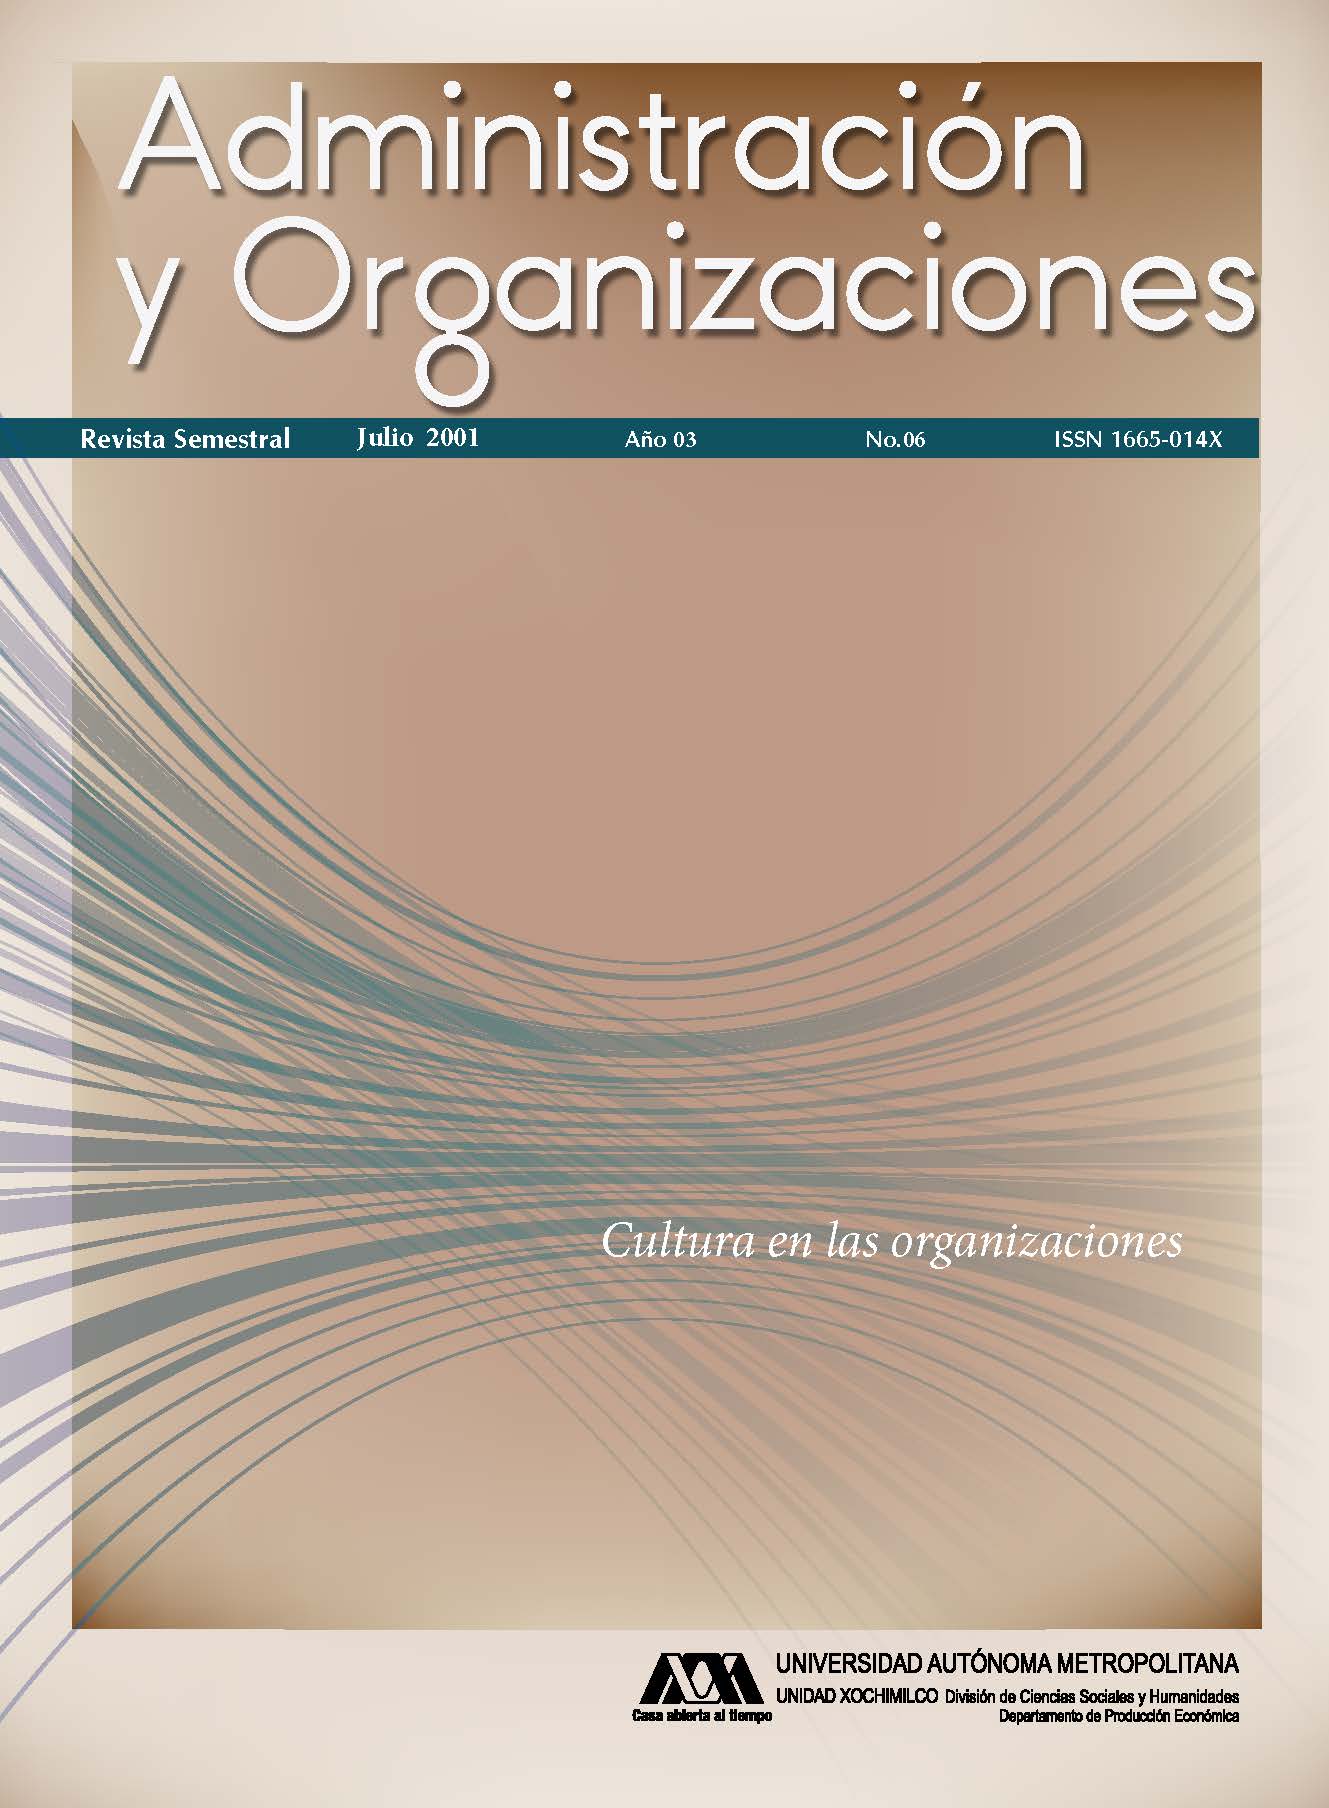 					View Vol. 3 No. 06 (3): Administración y Organizaciones
				